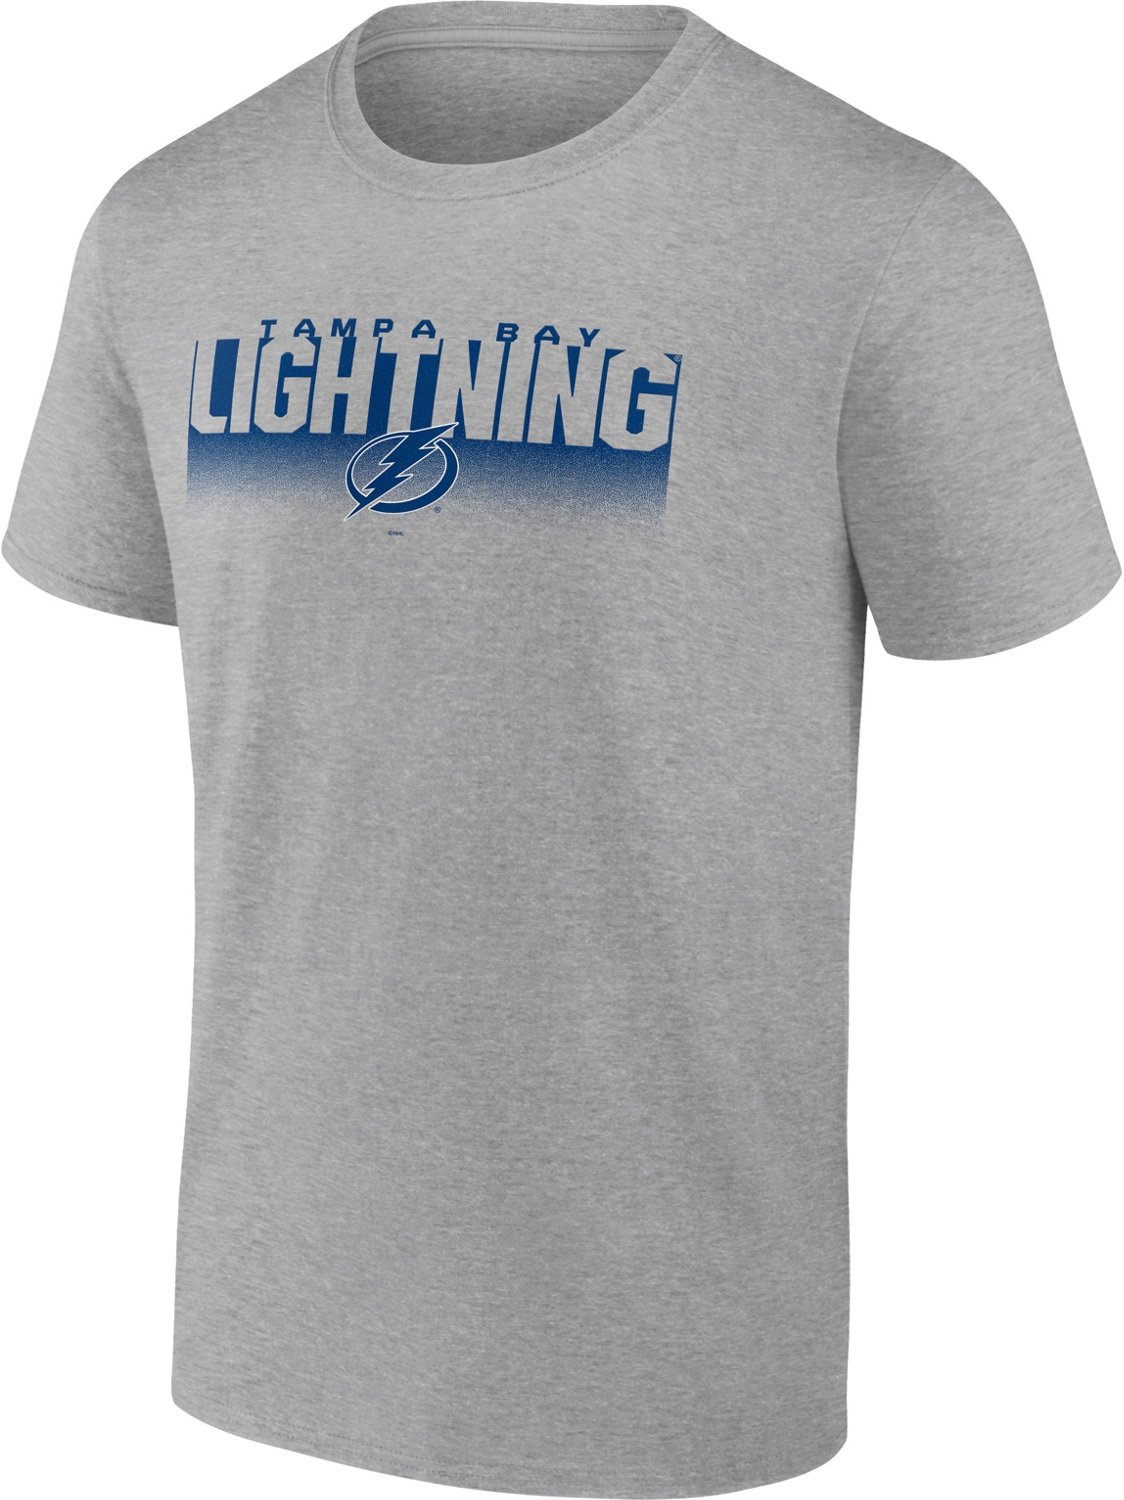 Tampa Bay Lightning Men's Apparel, Lightning Men's Jerseys, Clothing